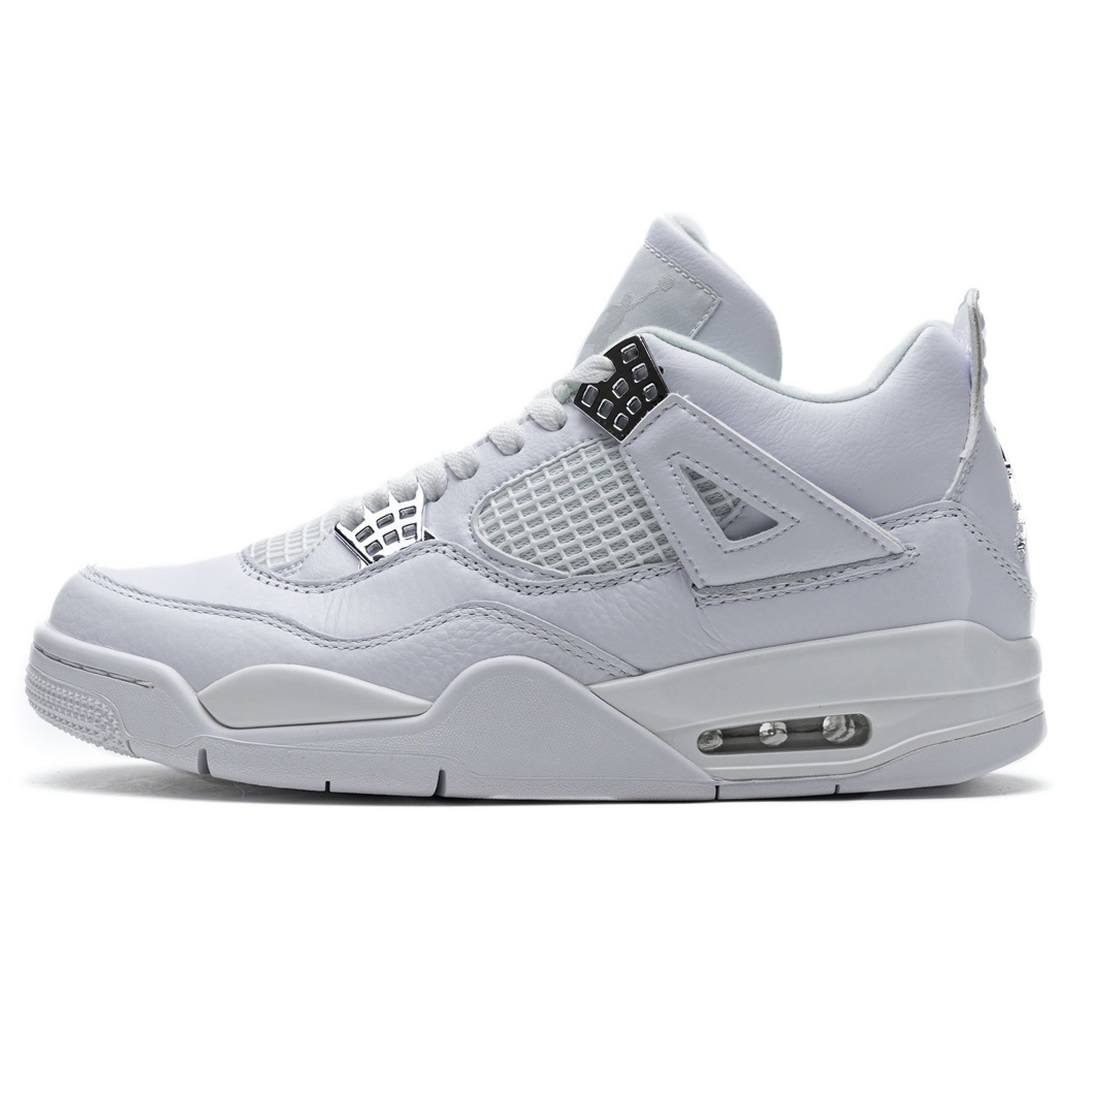 Nike Air Jordan 4 Retro Pure Money 308497 100 1 - www.kickbulk.cc